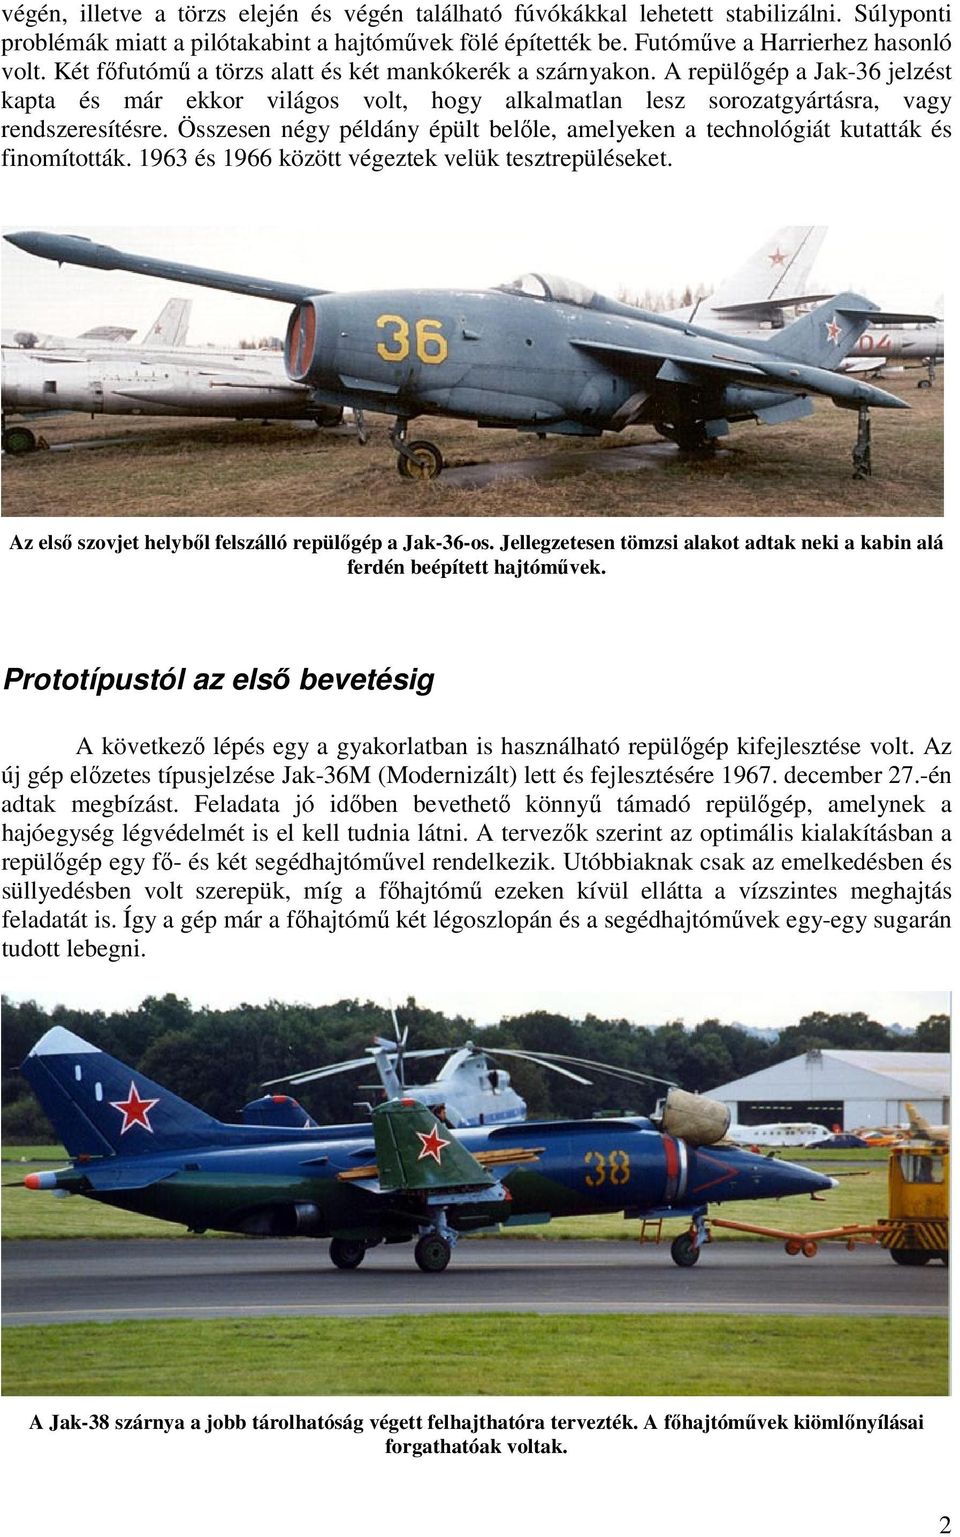 Összesen négy példány épült belőle, amelyeken a technológiát kutatták és finomították. 1963 és 1966 között végeztek velük tesztrepüléseket. Az első szovjet helyből felszálló repülőgép a Jak-36-os.